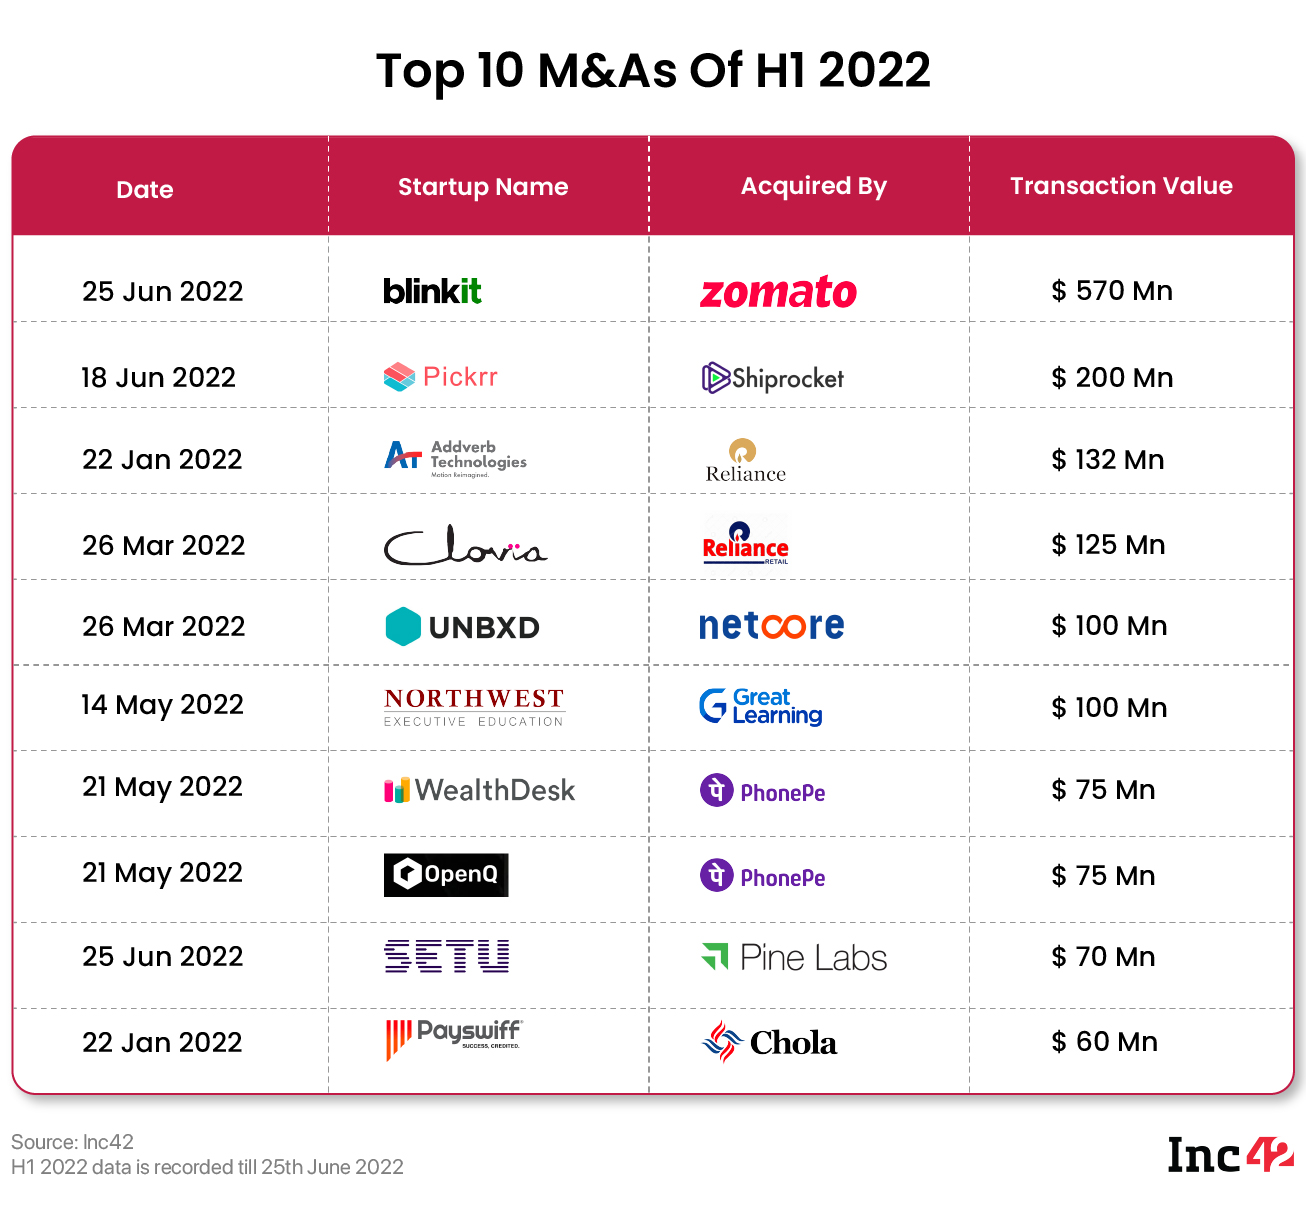 Top M&A deals of 2022